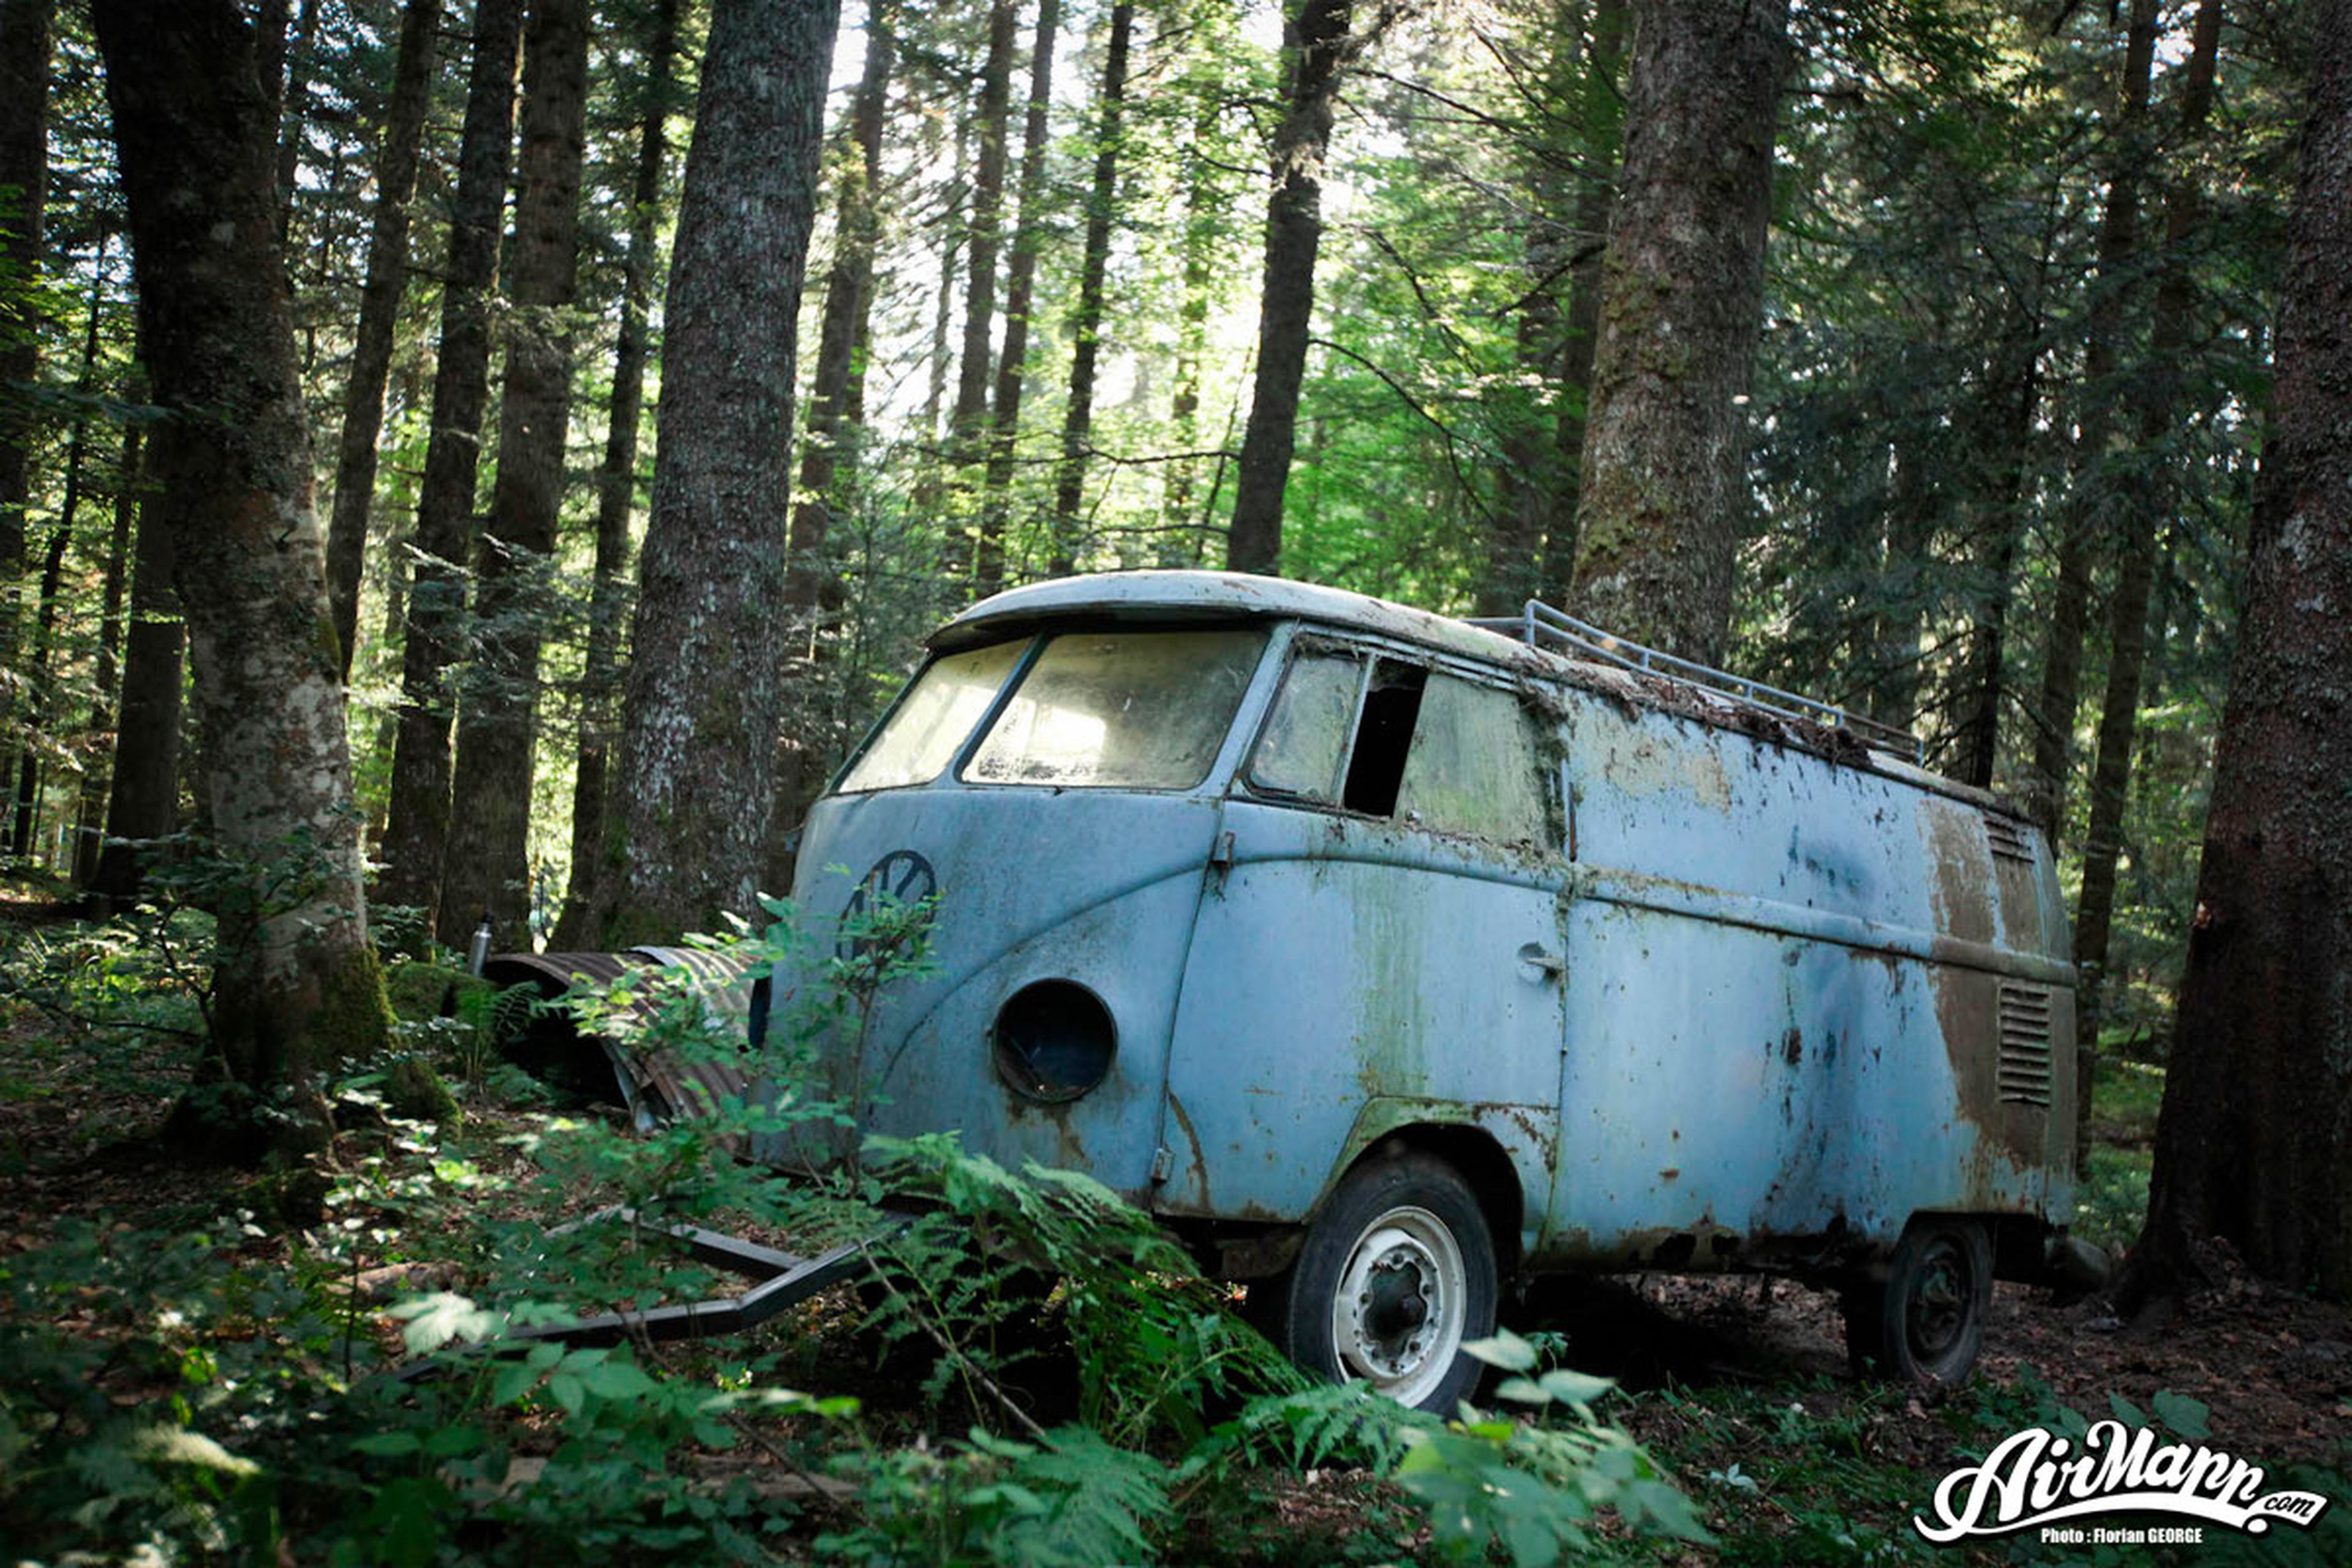 En vídeo: resucitan una VW T2 tras 40 años abandonada